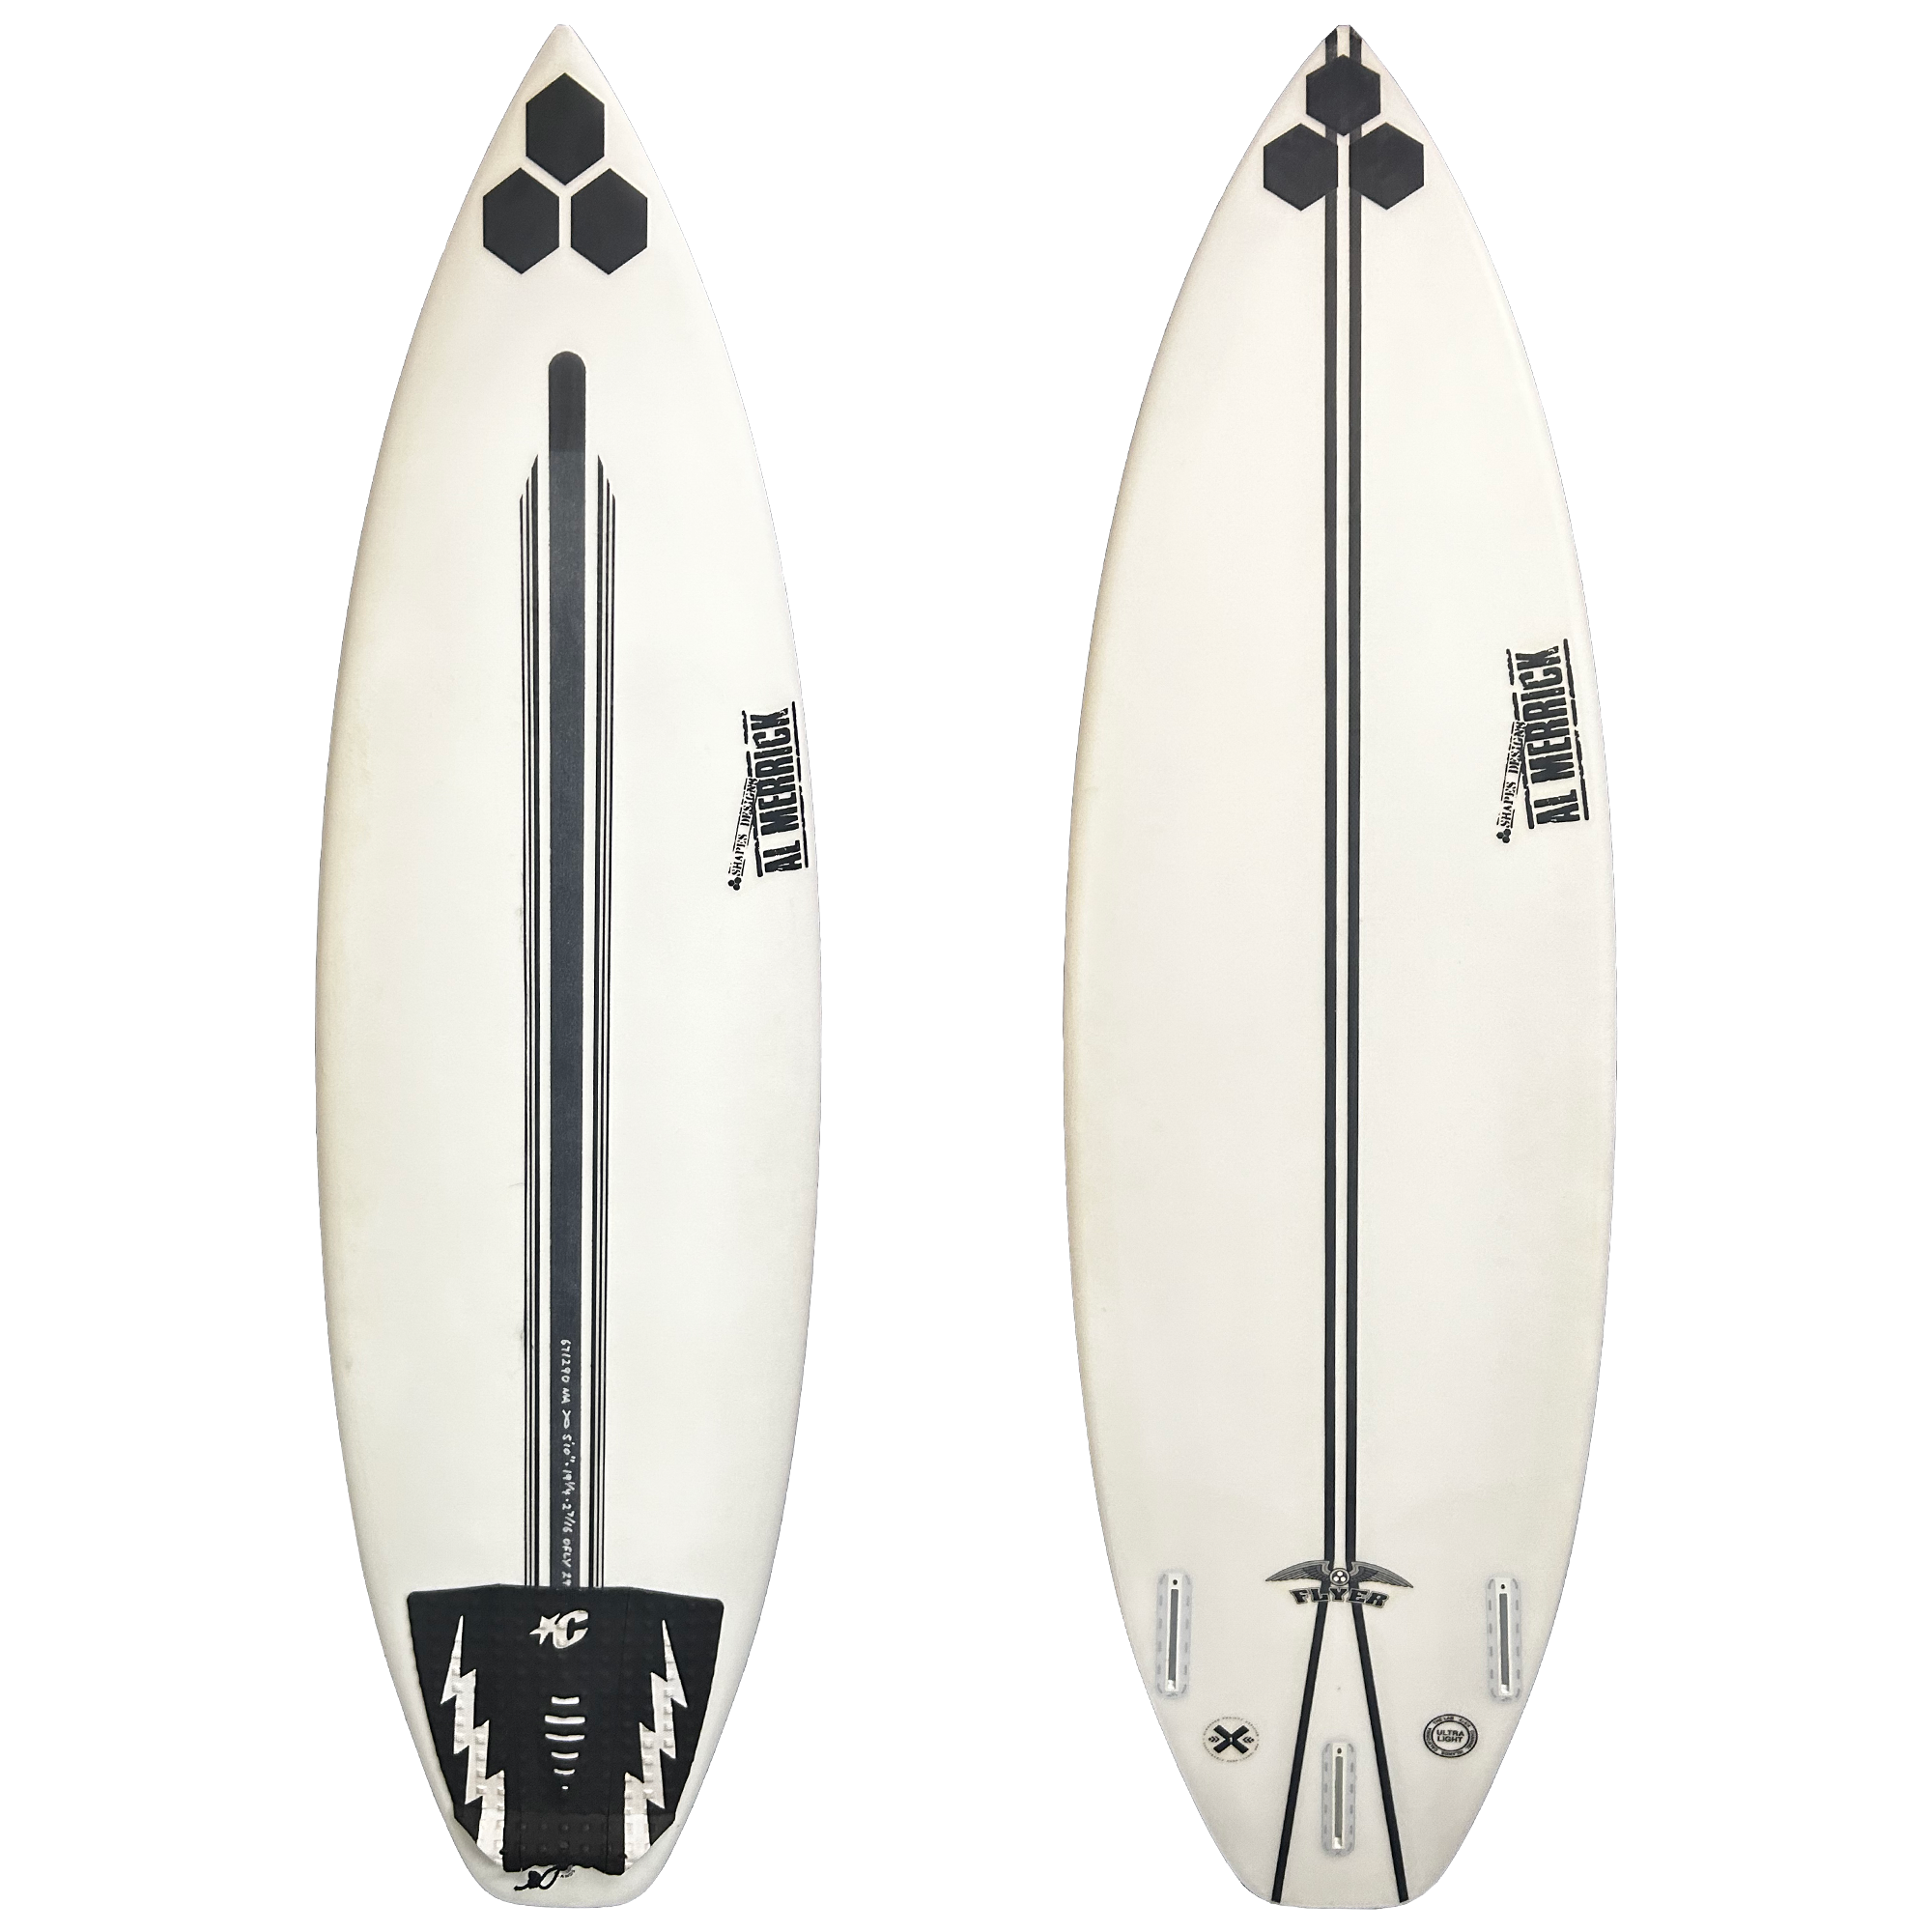 Channel Islands OG Flyer 5'10 Used Surfboard